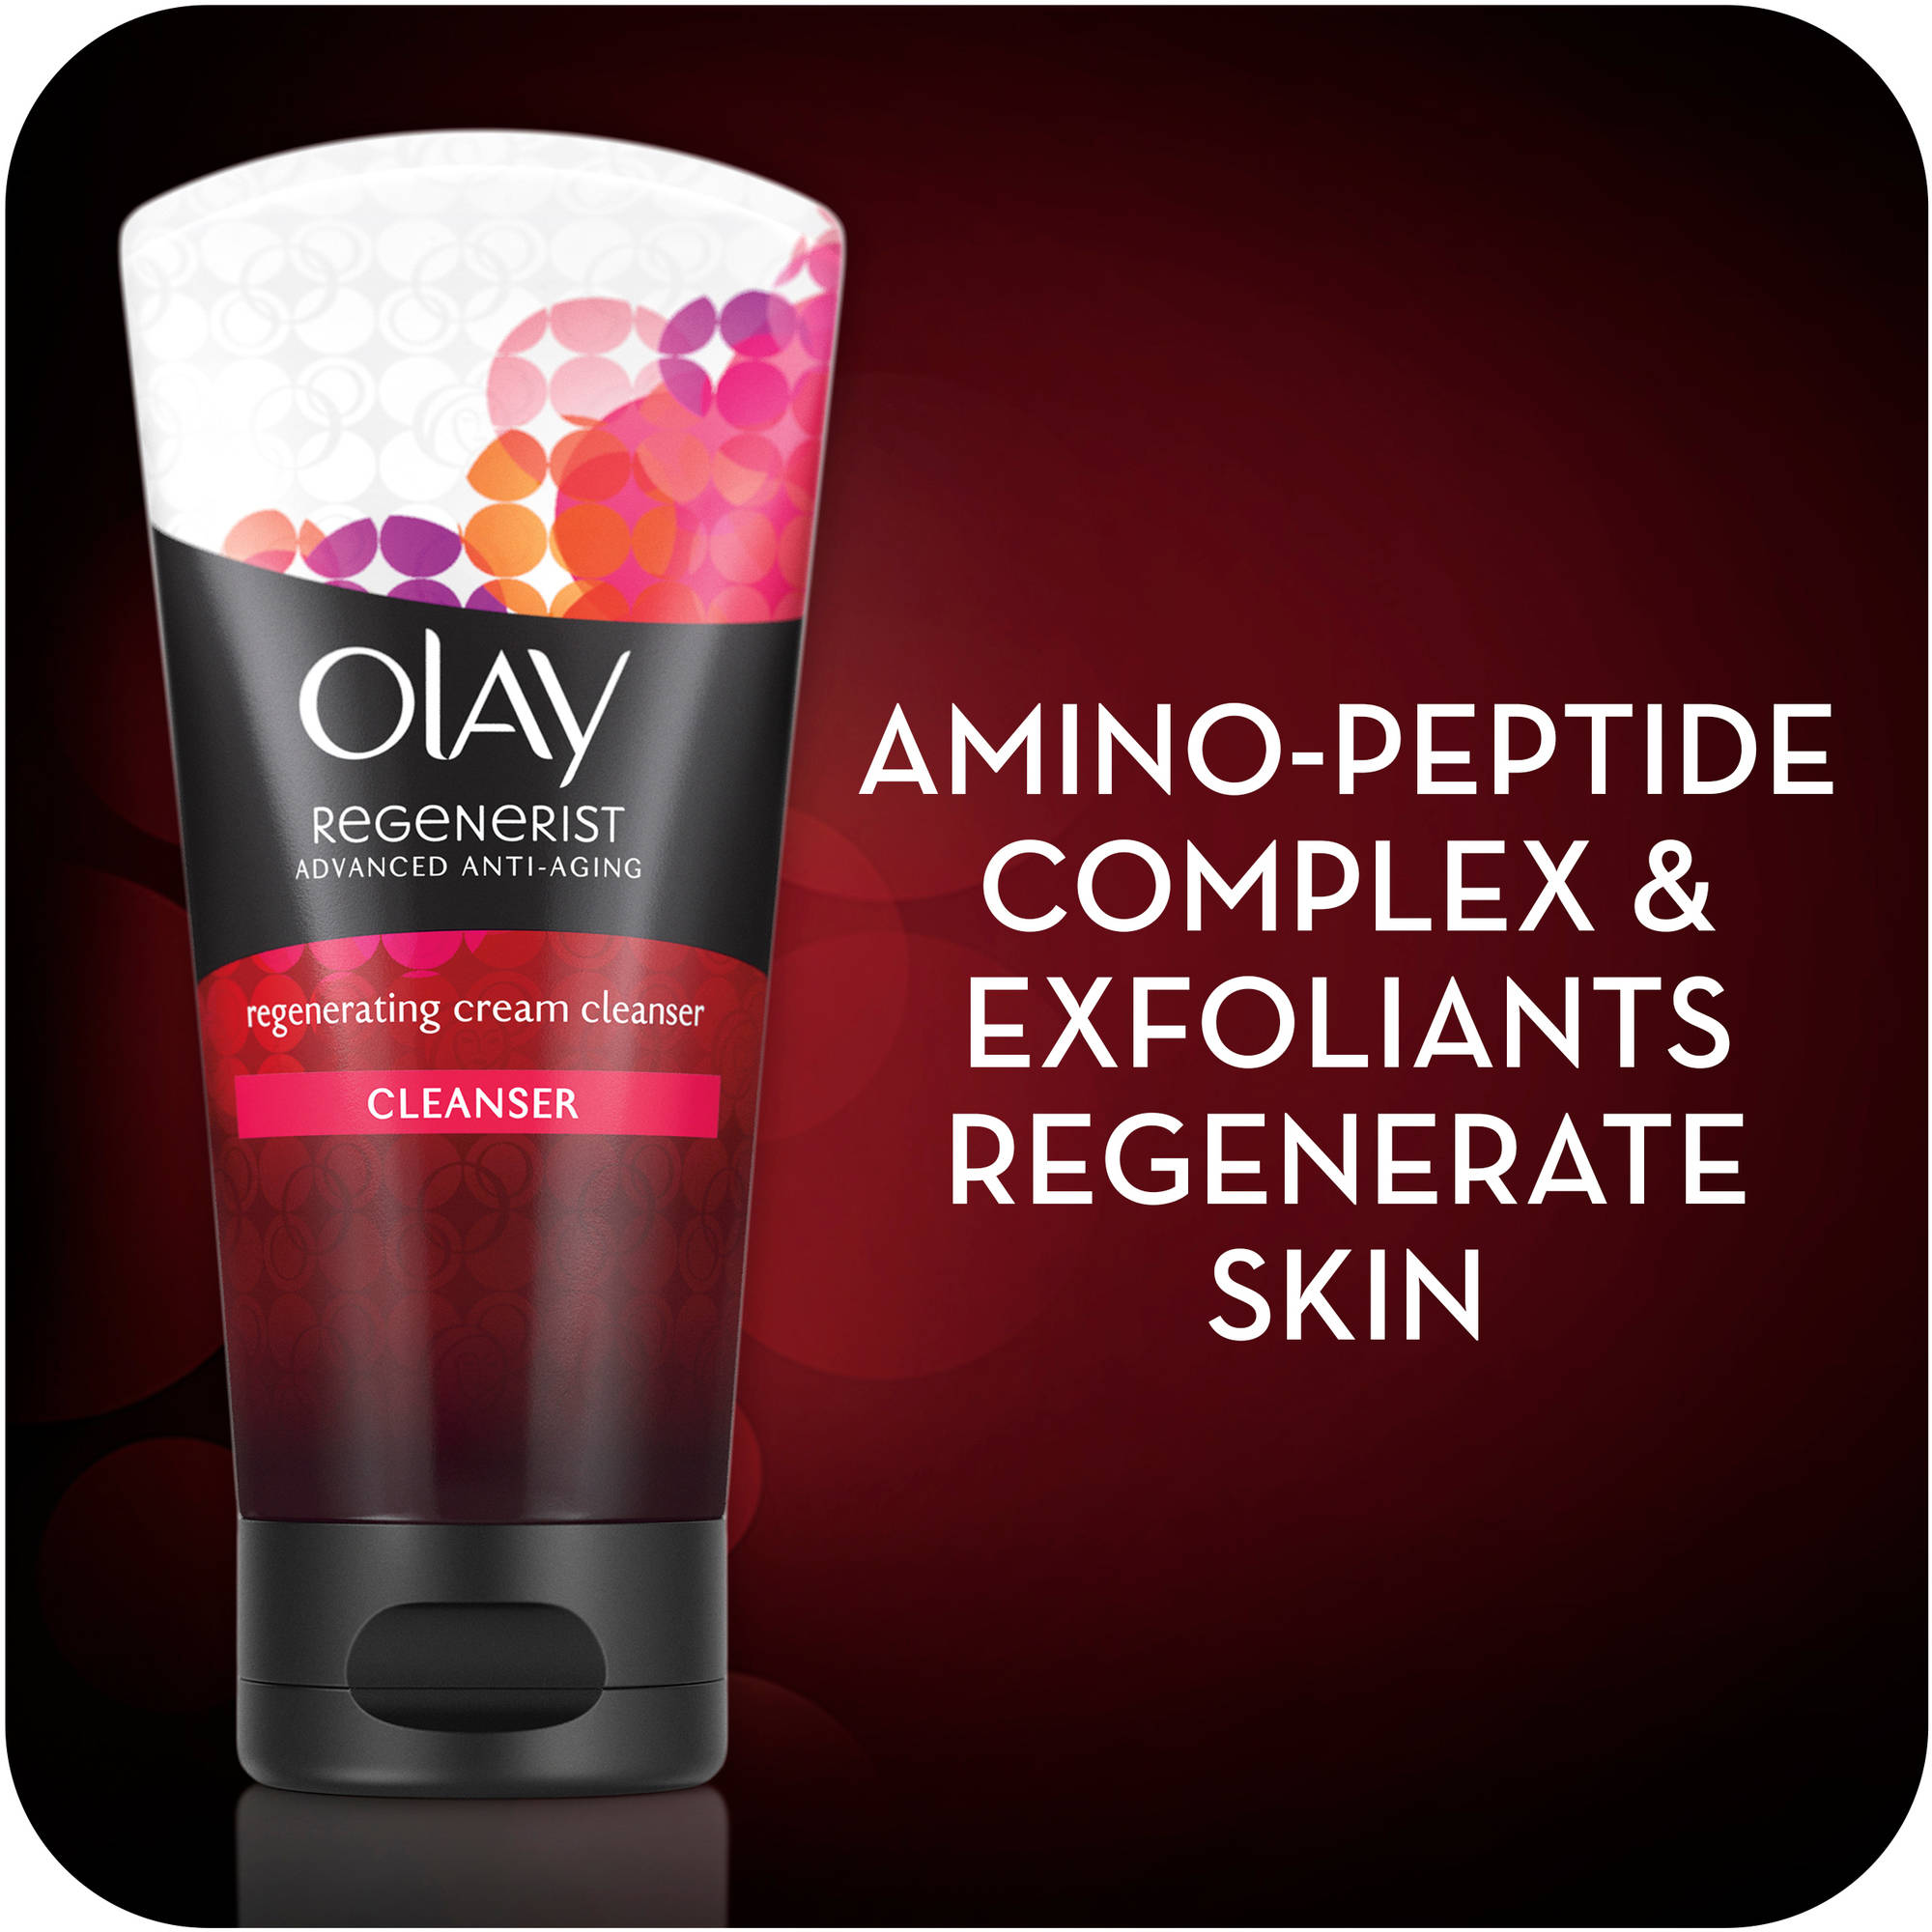 Olay Regenerist Regenerating Cream Cleanser 5 fl oz - image 4 of 5